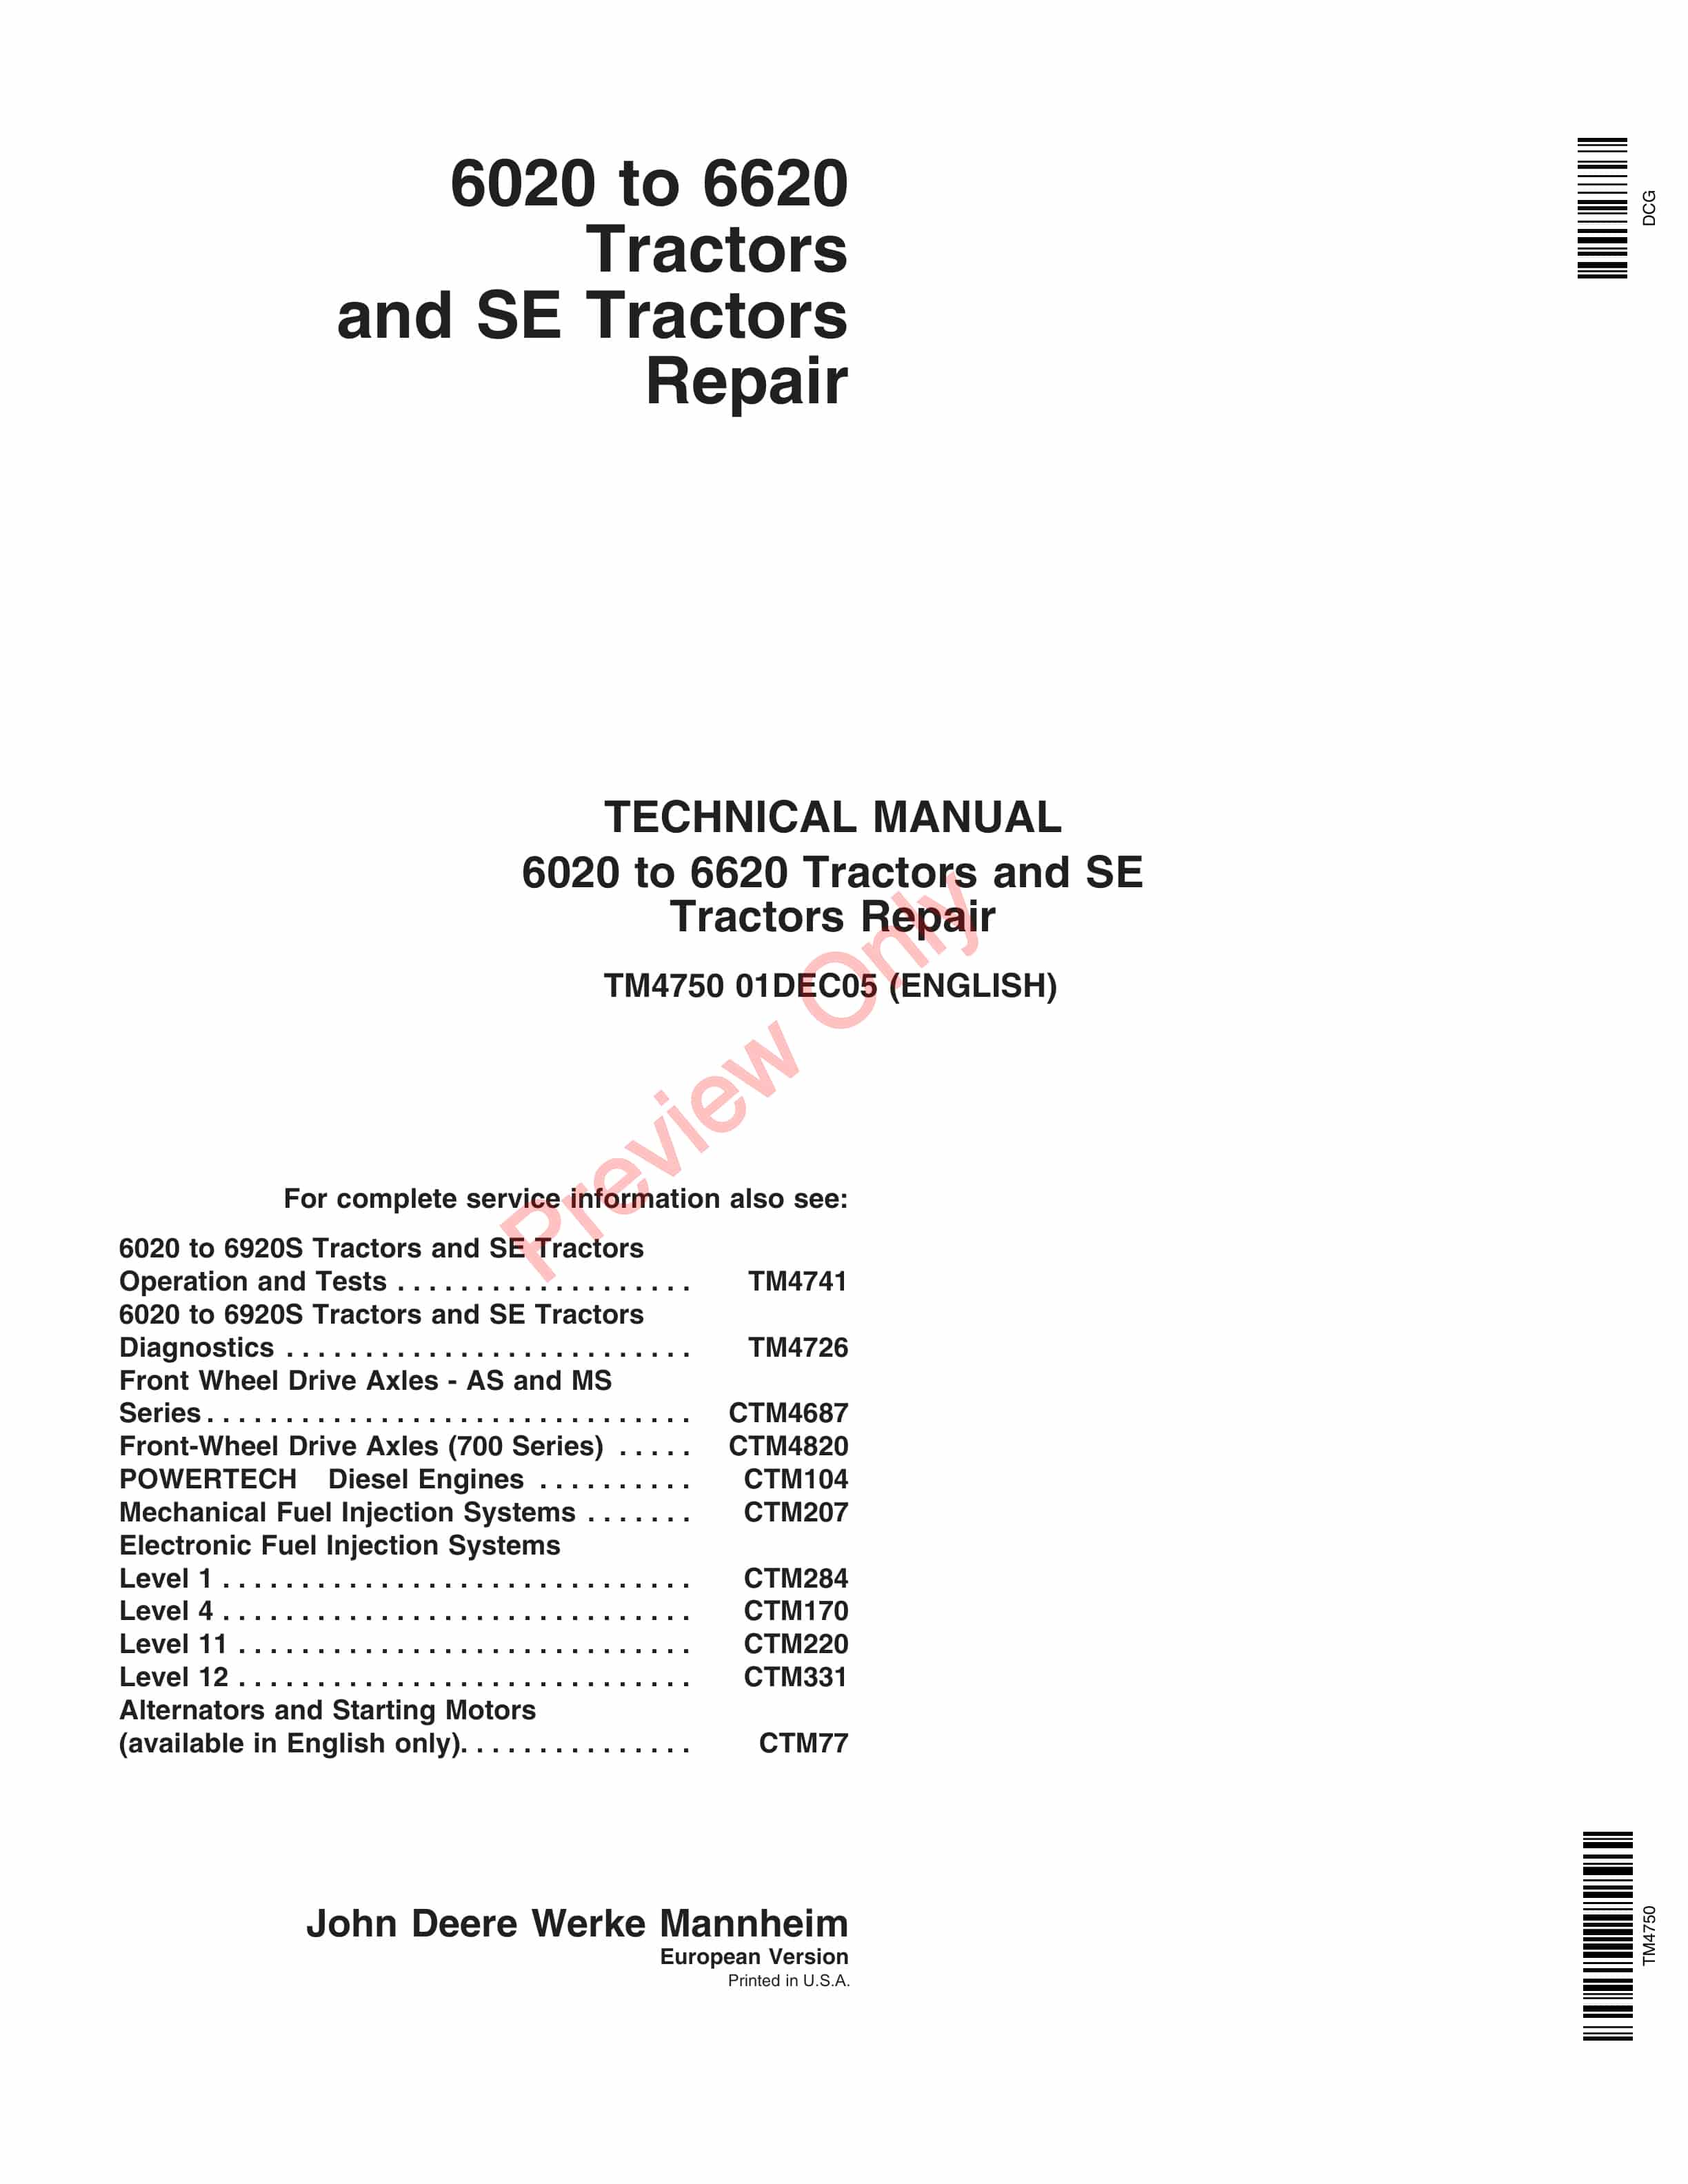 John Deere 6020 to 6620 Tractors and SE Tractors Repair Technical Manual TM4750 01DEC05 PDF